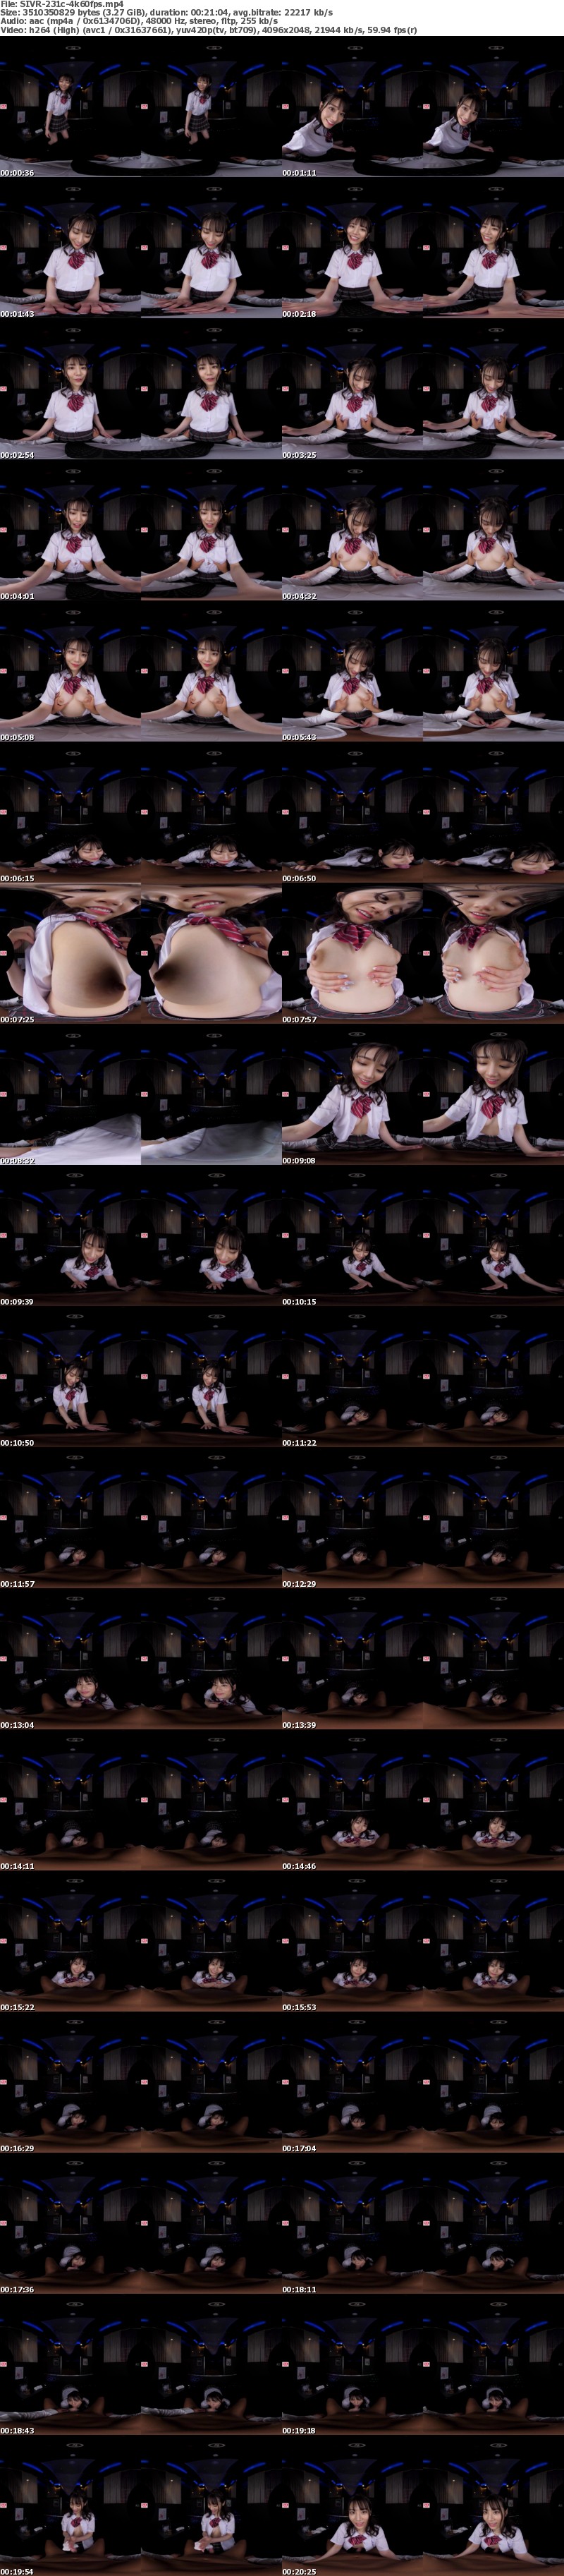 [VR] SIVR-231 【VR】伝説の美少女‘河北彩花’がもてなすオール5つ星 超高級風俗マンションへようこそ